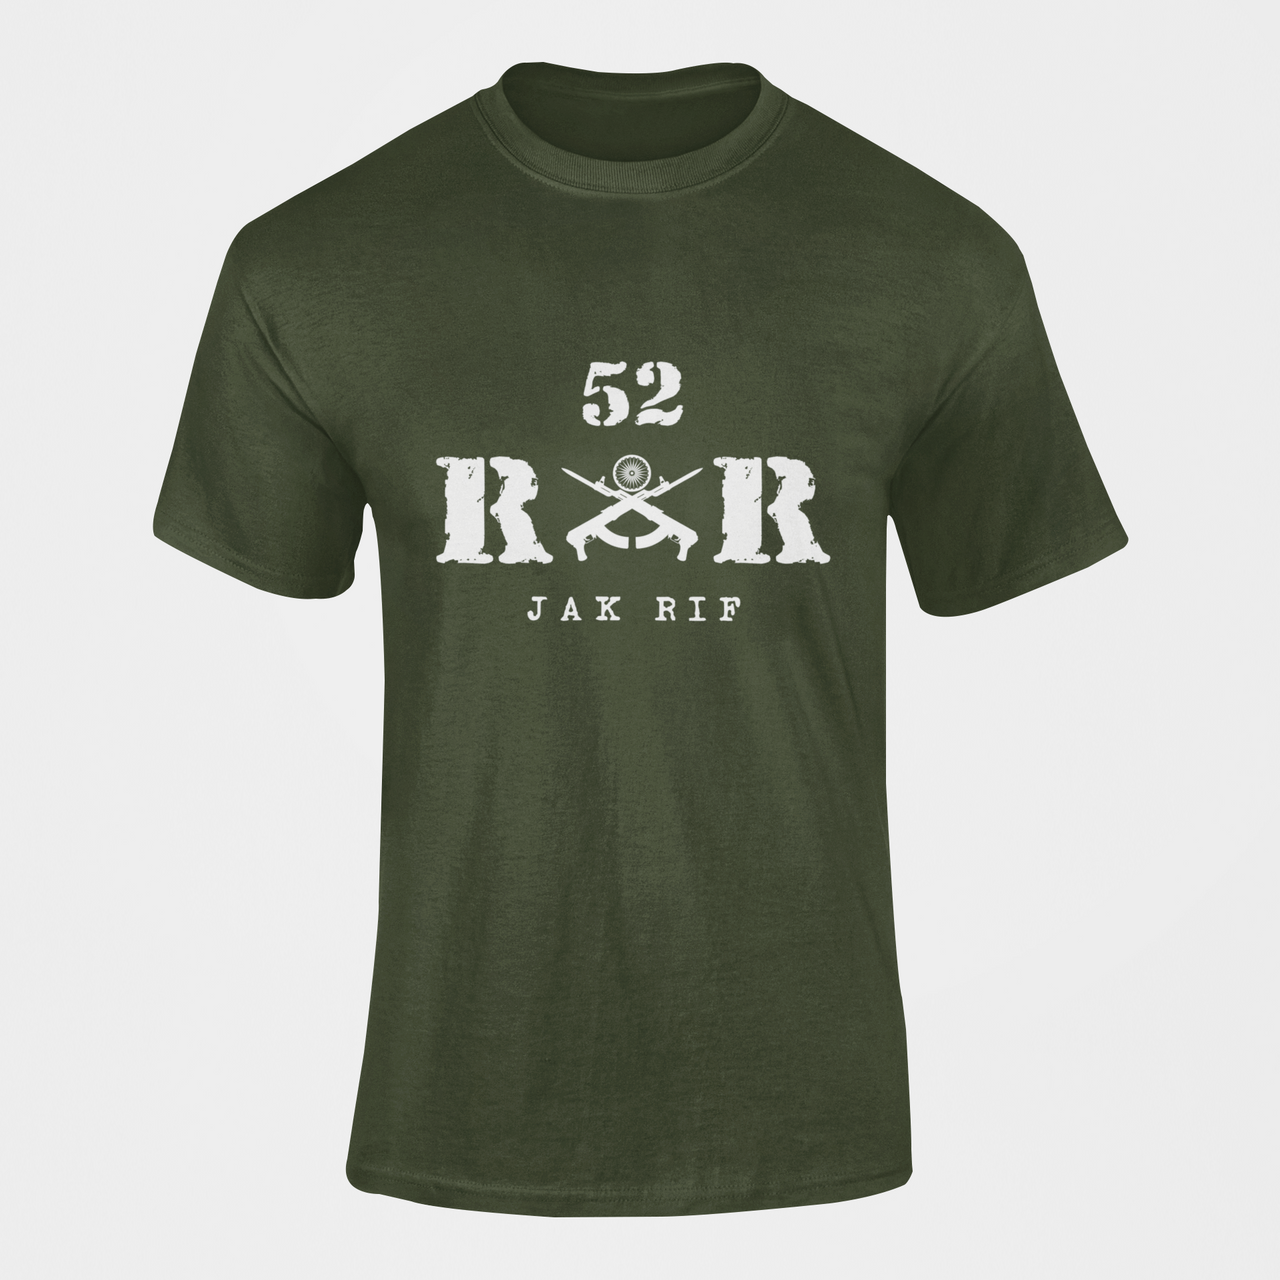 Rashtriya Rifles T-shirt - 52 RR Jak Rif (Men)